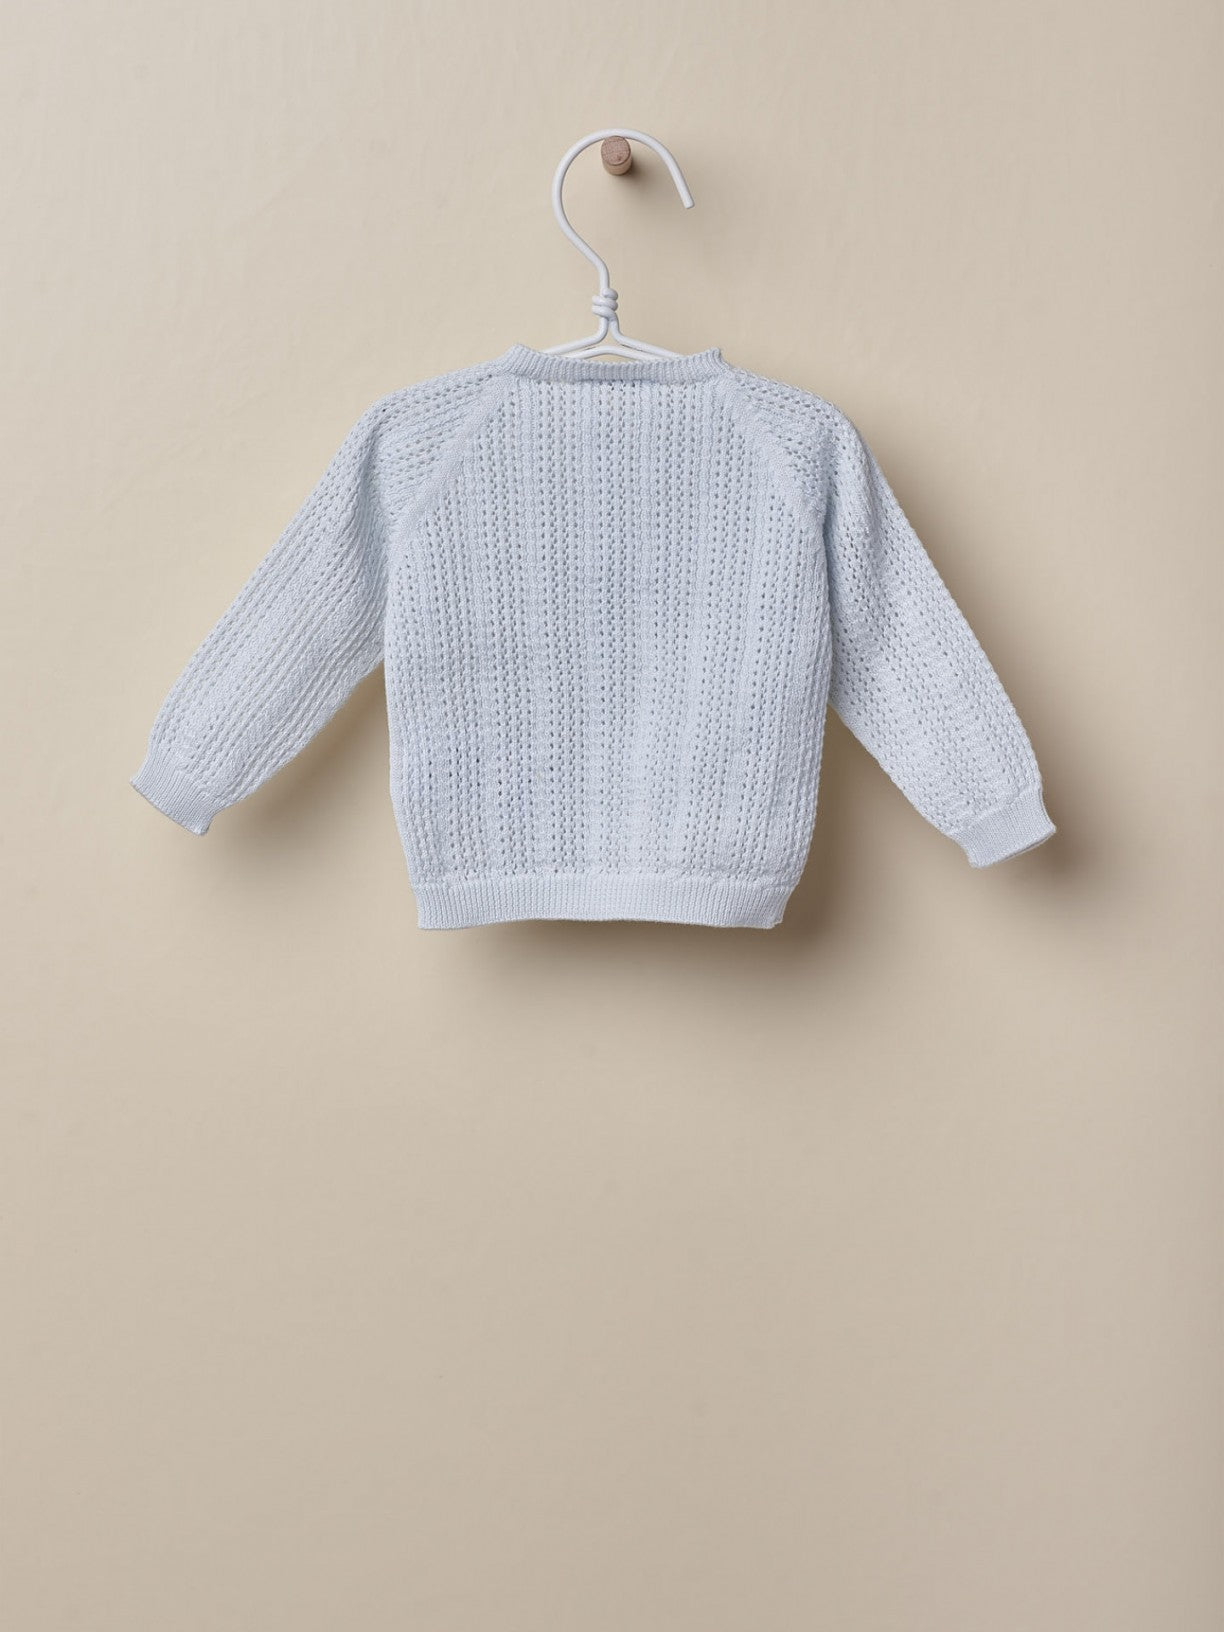 Casaco tricotado em algodão